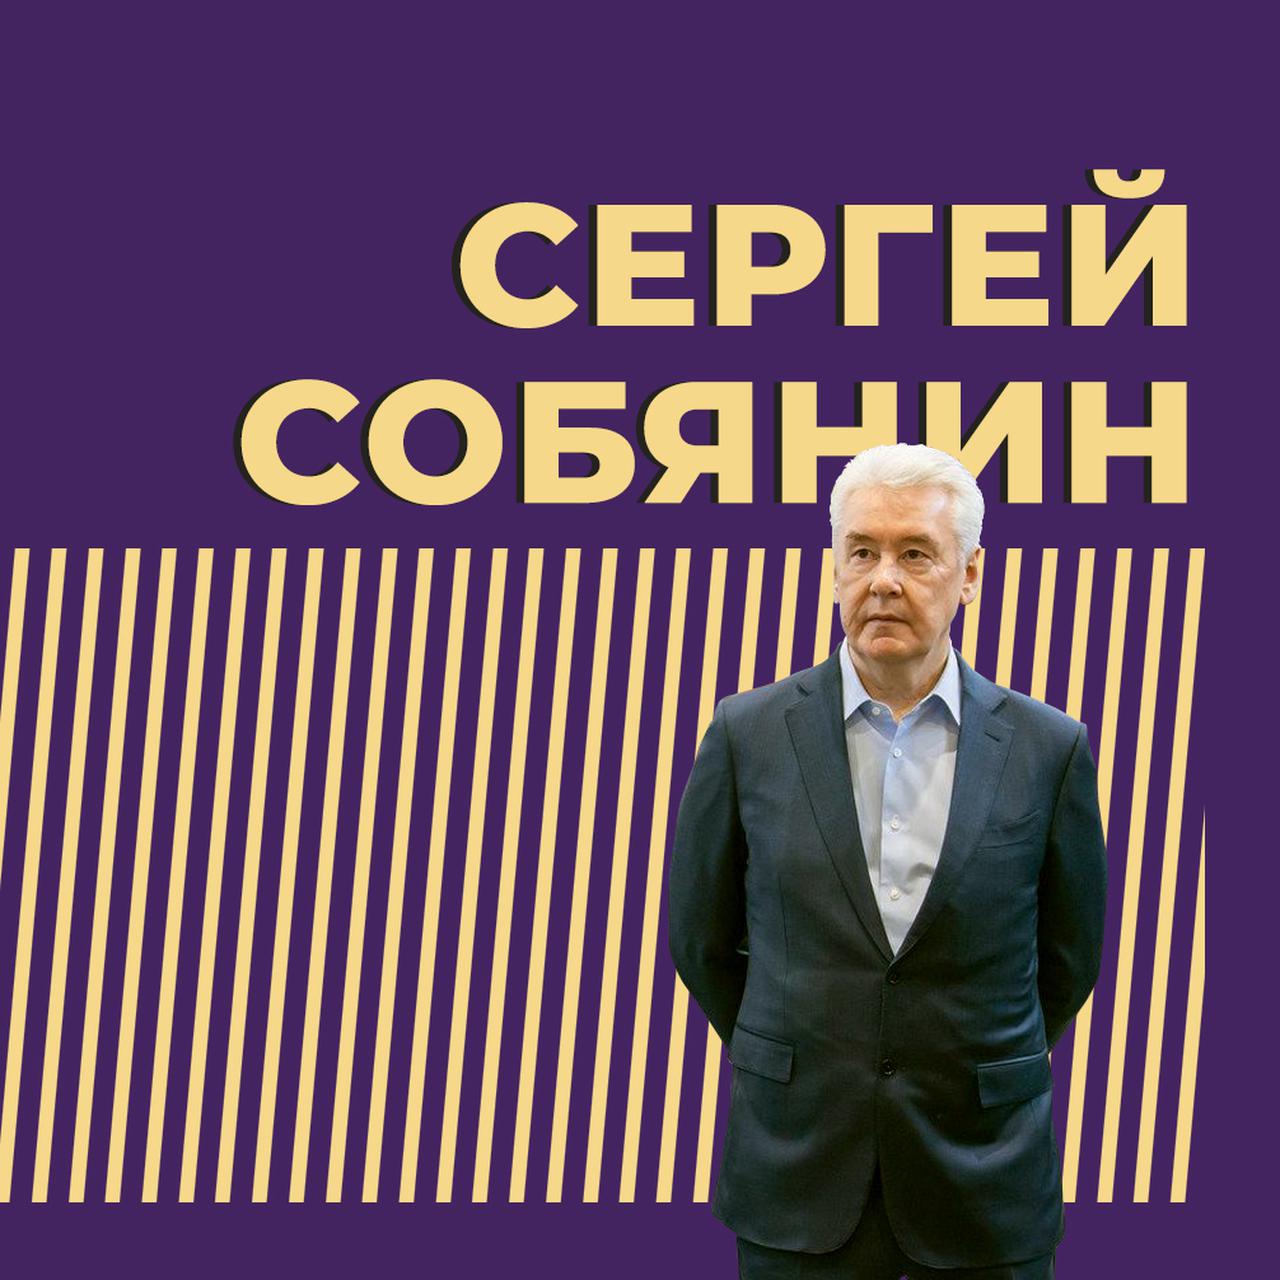 Сергей Собянин - личная жизнь и биография | Полная информация